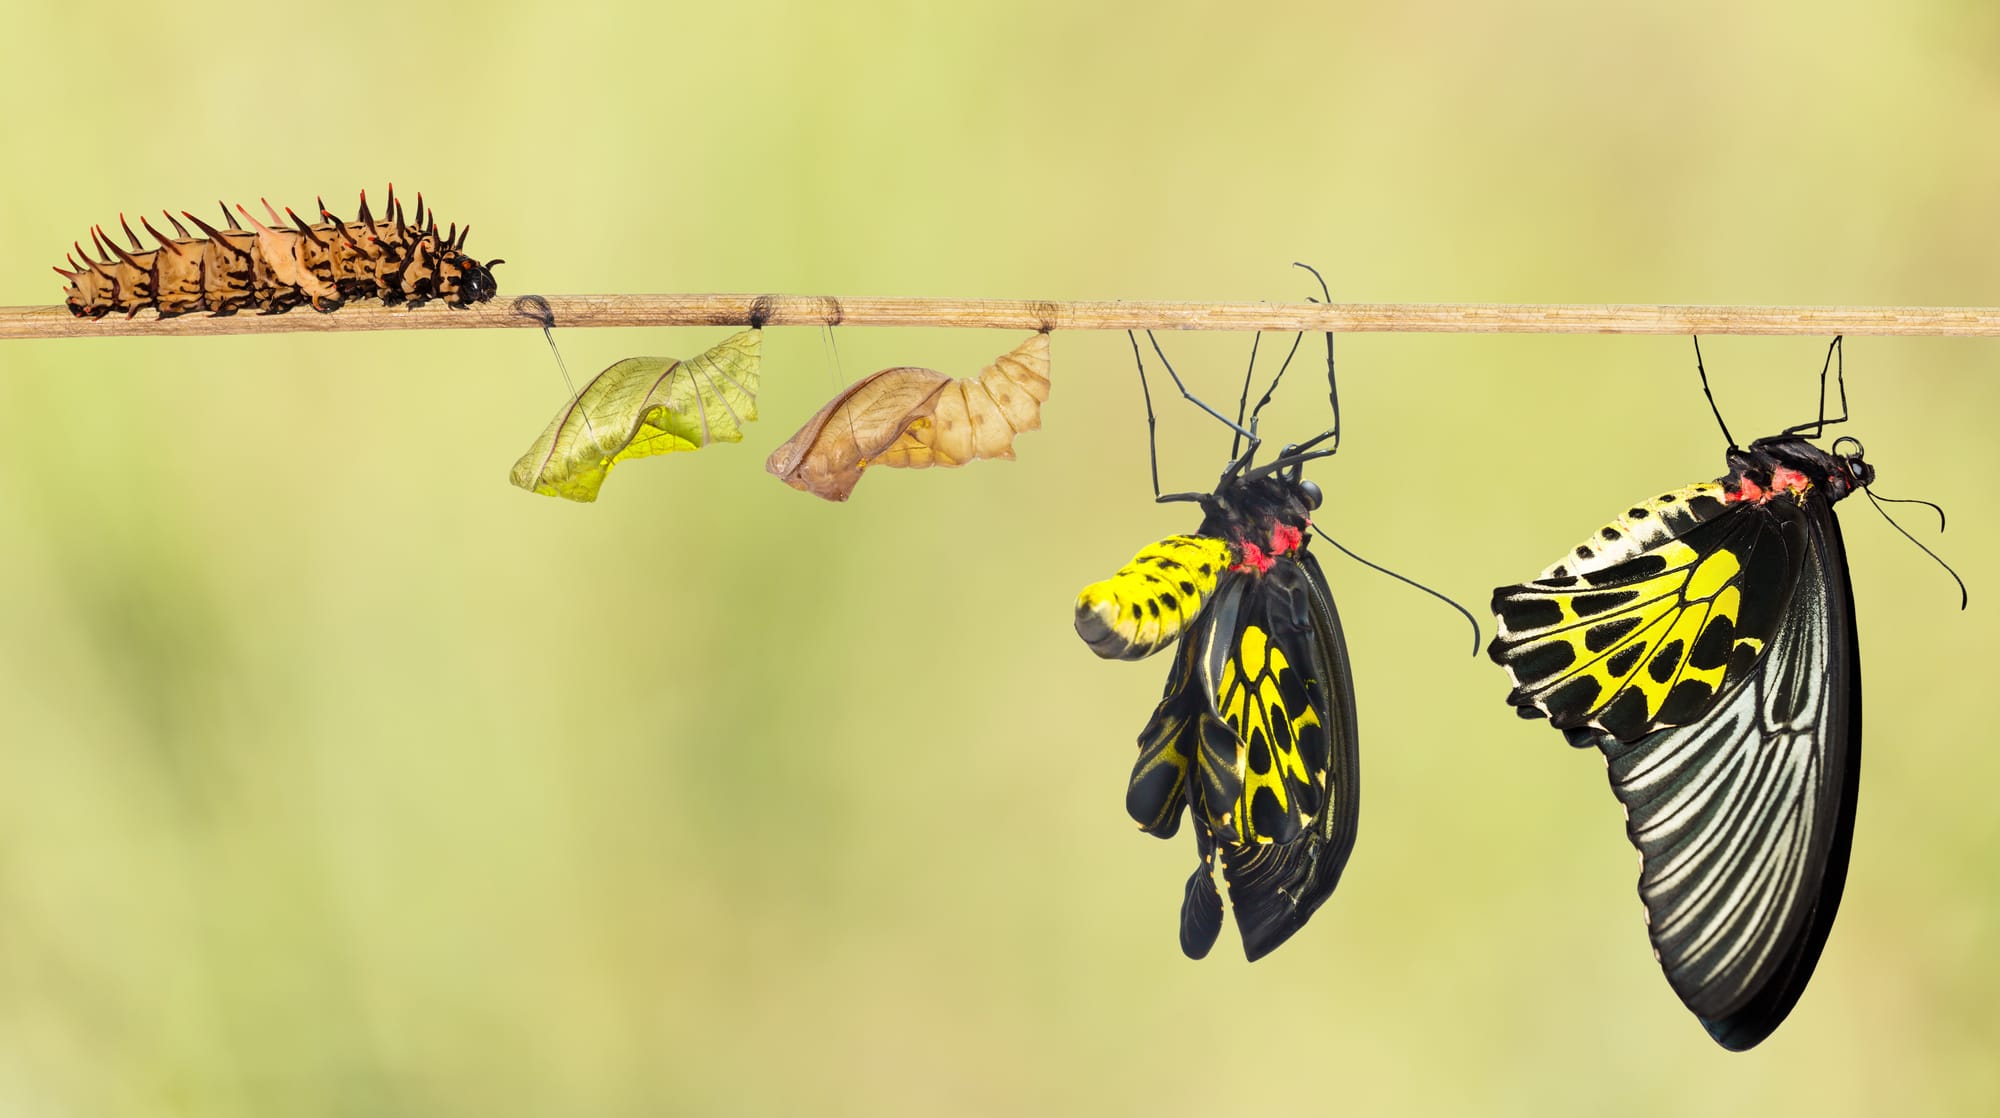 Le cycle de vie d’un papillon portequeue, dont les différents stades sont illustrés le long d’une branche.